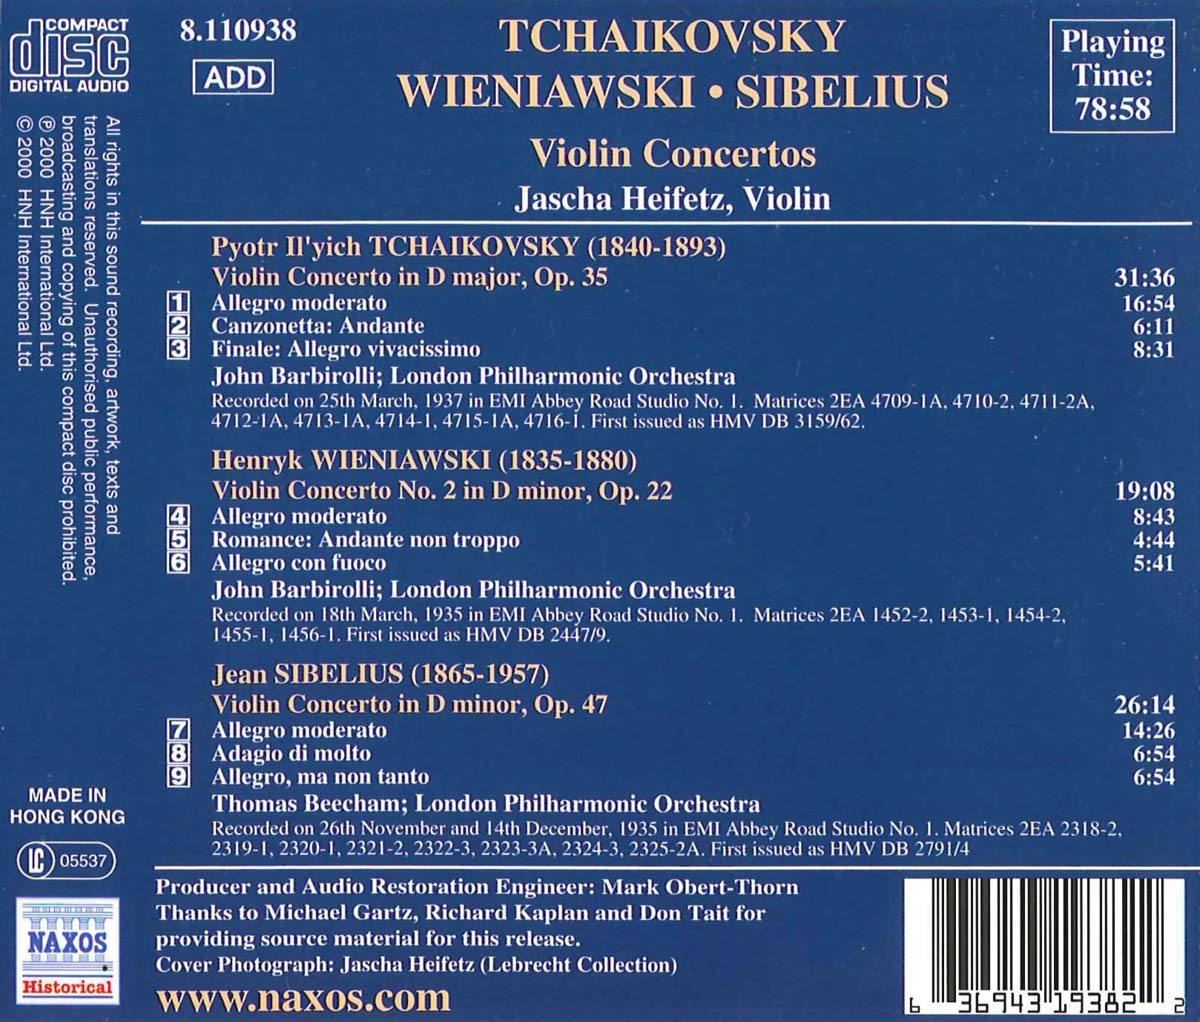 Jascha Heifetz 차이코프스키 / 비에니아프스키 / 시벨리우스: 바이올린 협주곡 - 하이페츠 (Tchaikovsky / Wieniawski / Sibelius: Violin Concertos) 